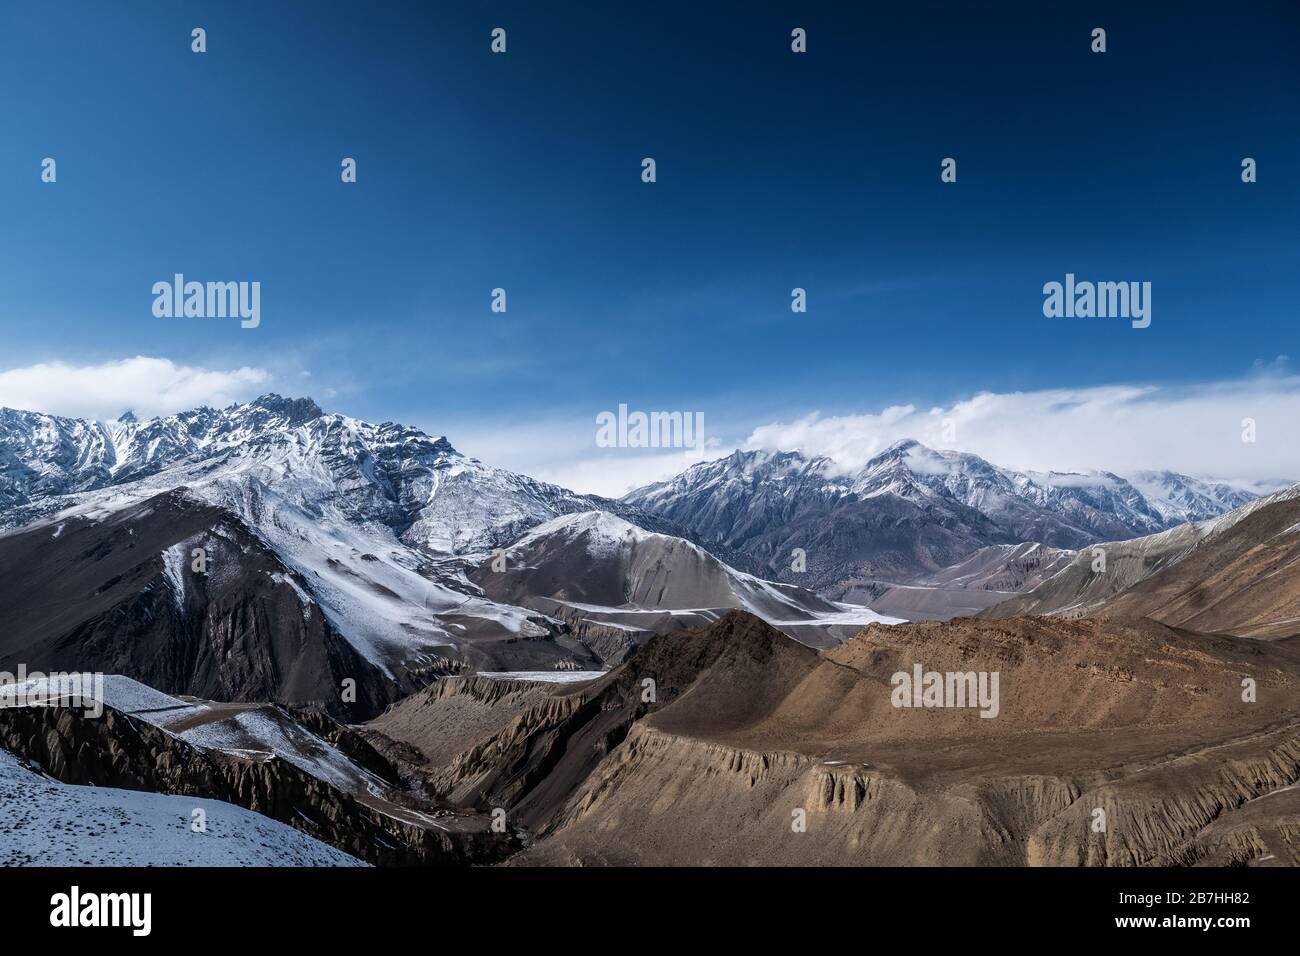 Mustang Paesaggi nella neve, Nepal Foto Stock